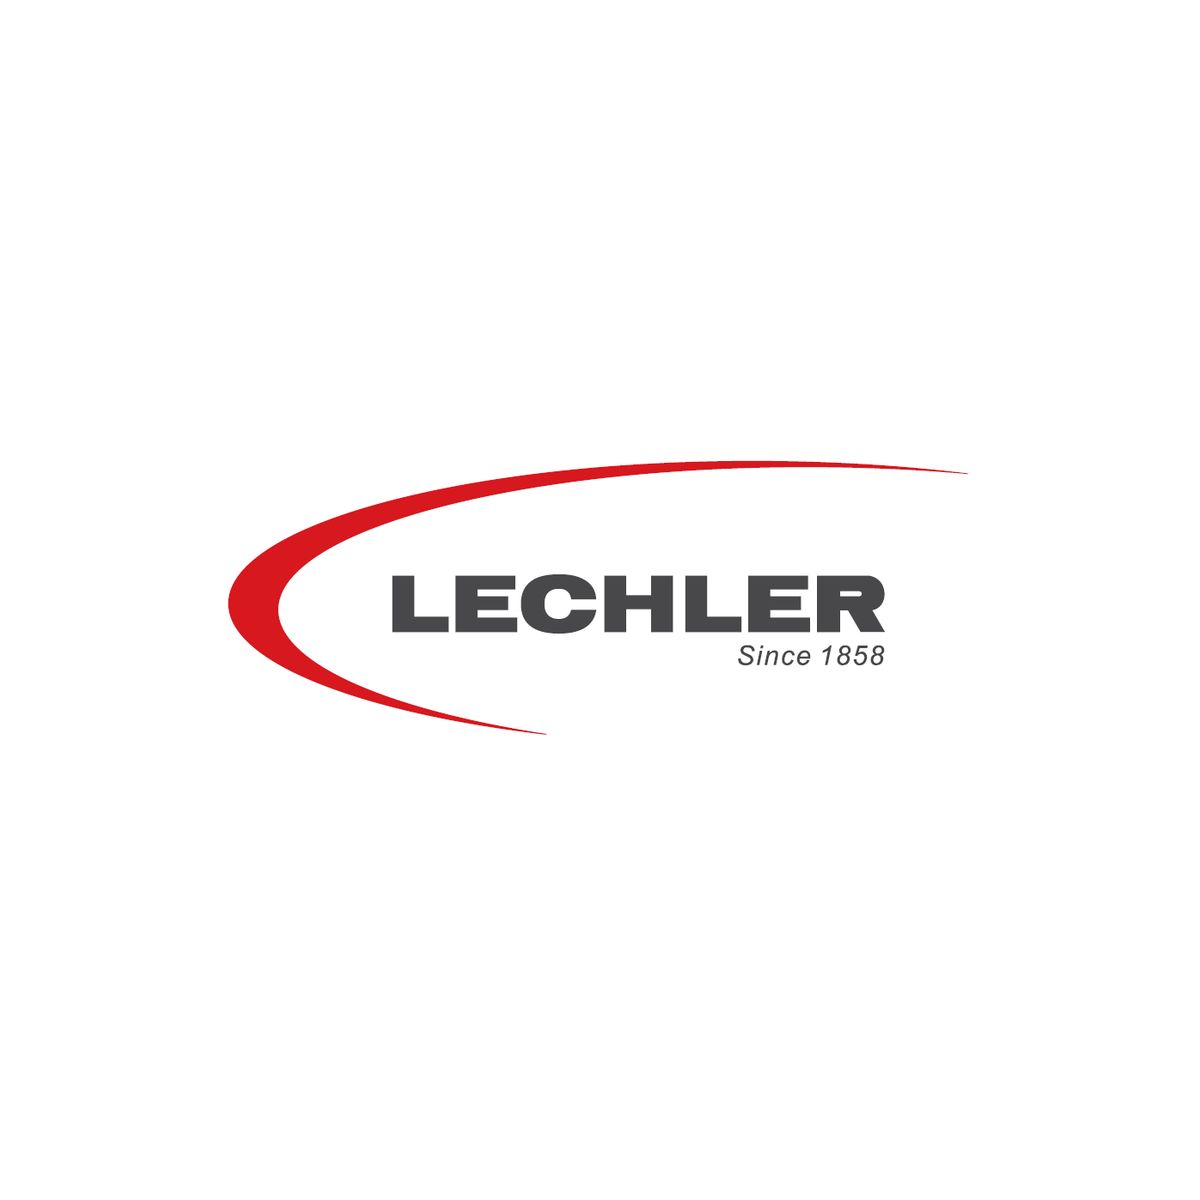  Lechler bietet seit 1858 Lackprodukte...